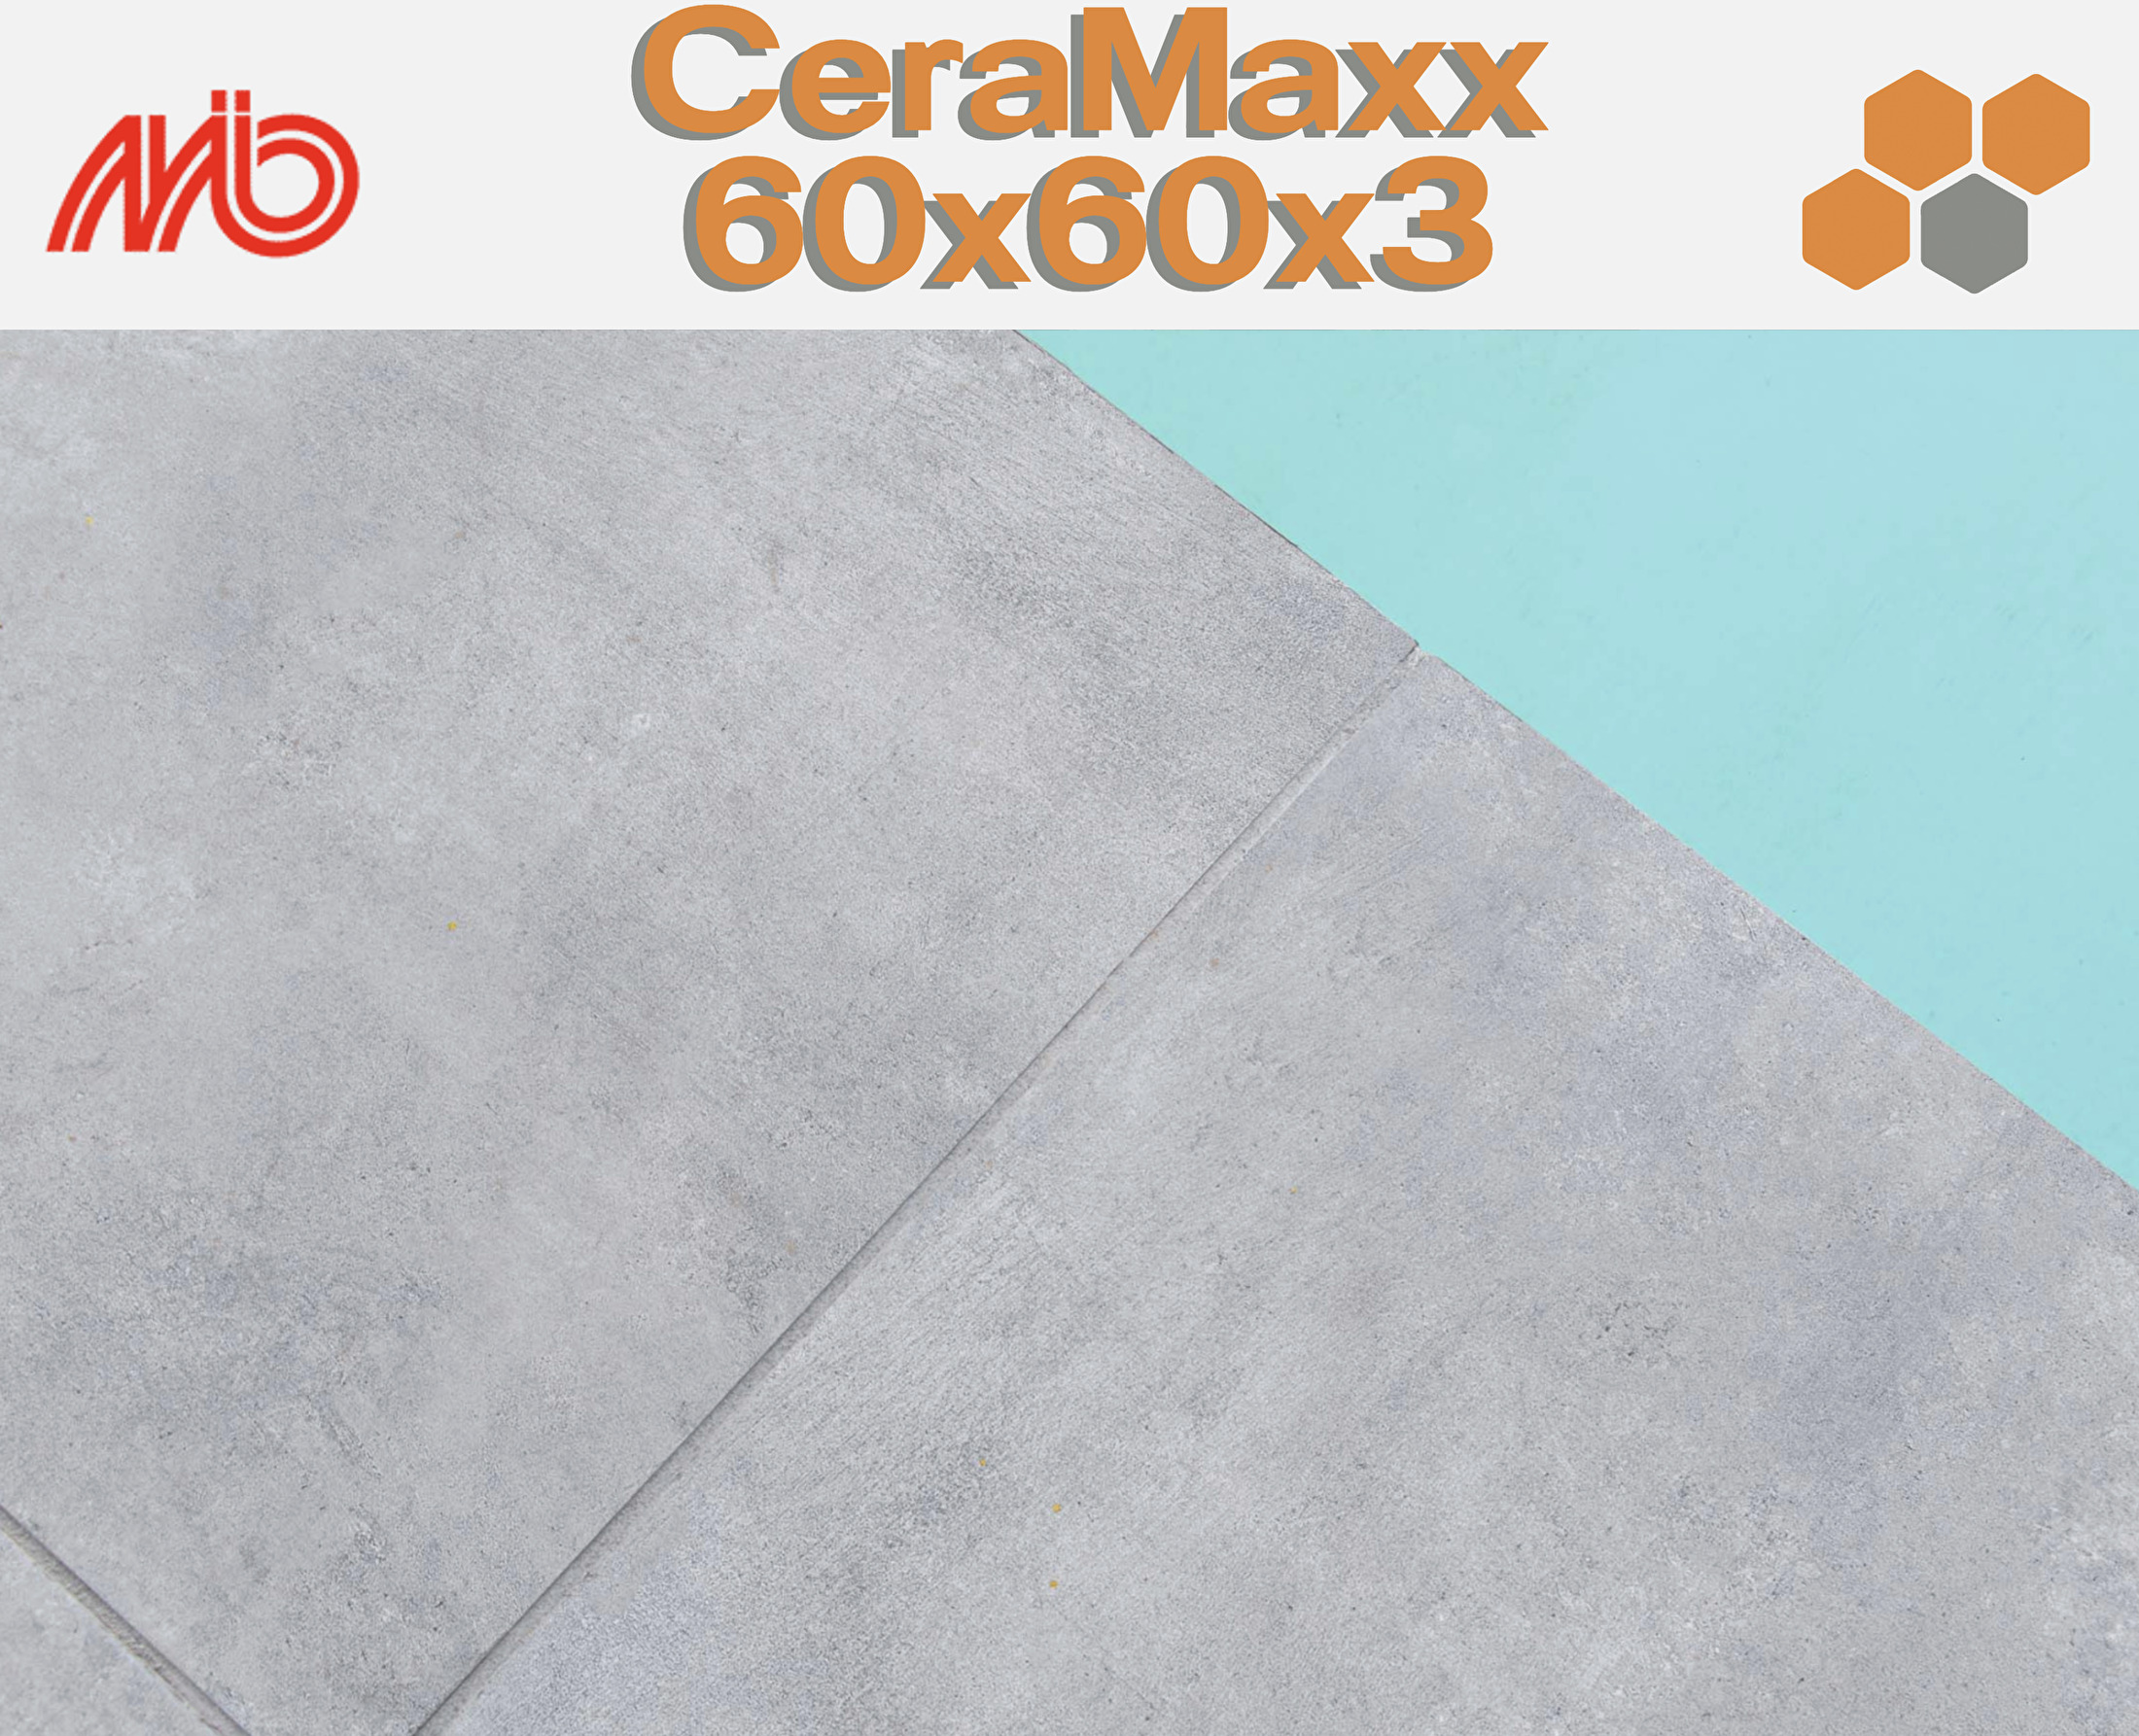 CeraMaxx 60x60x3